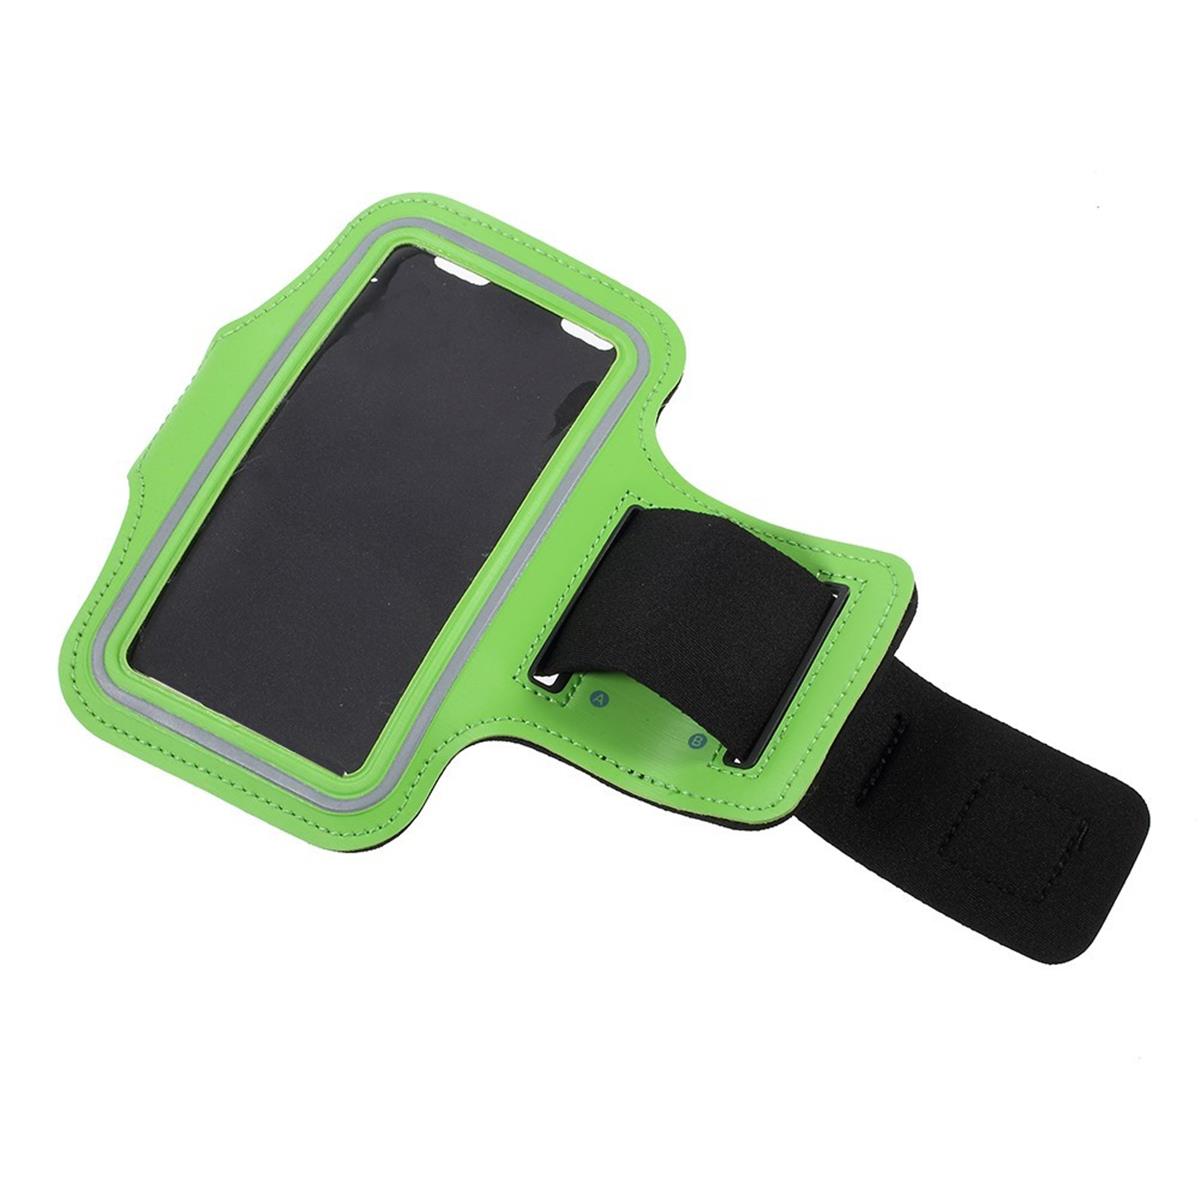 Universal Sport Armband Handy Tasche für Smartphones von 6,6" bis 6,9" Grün